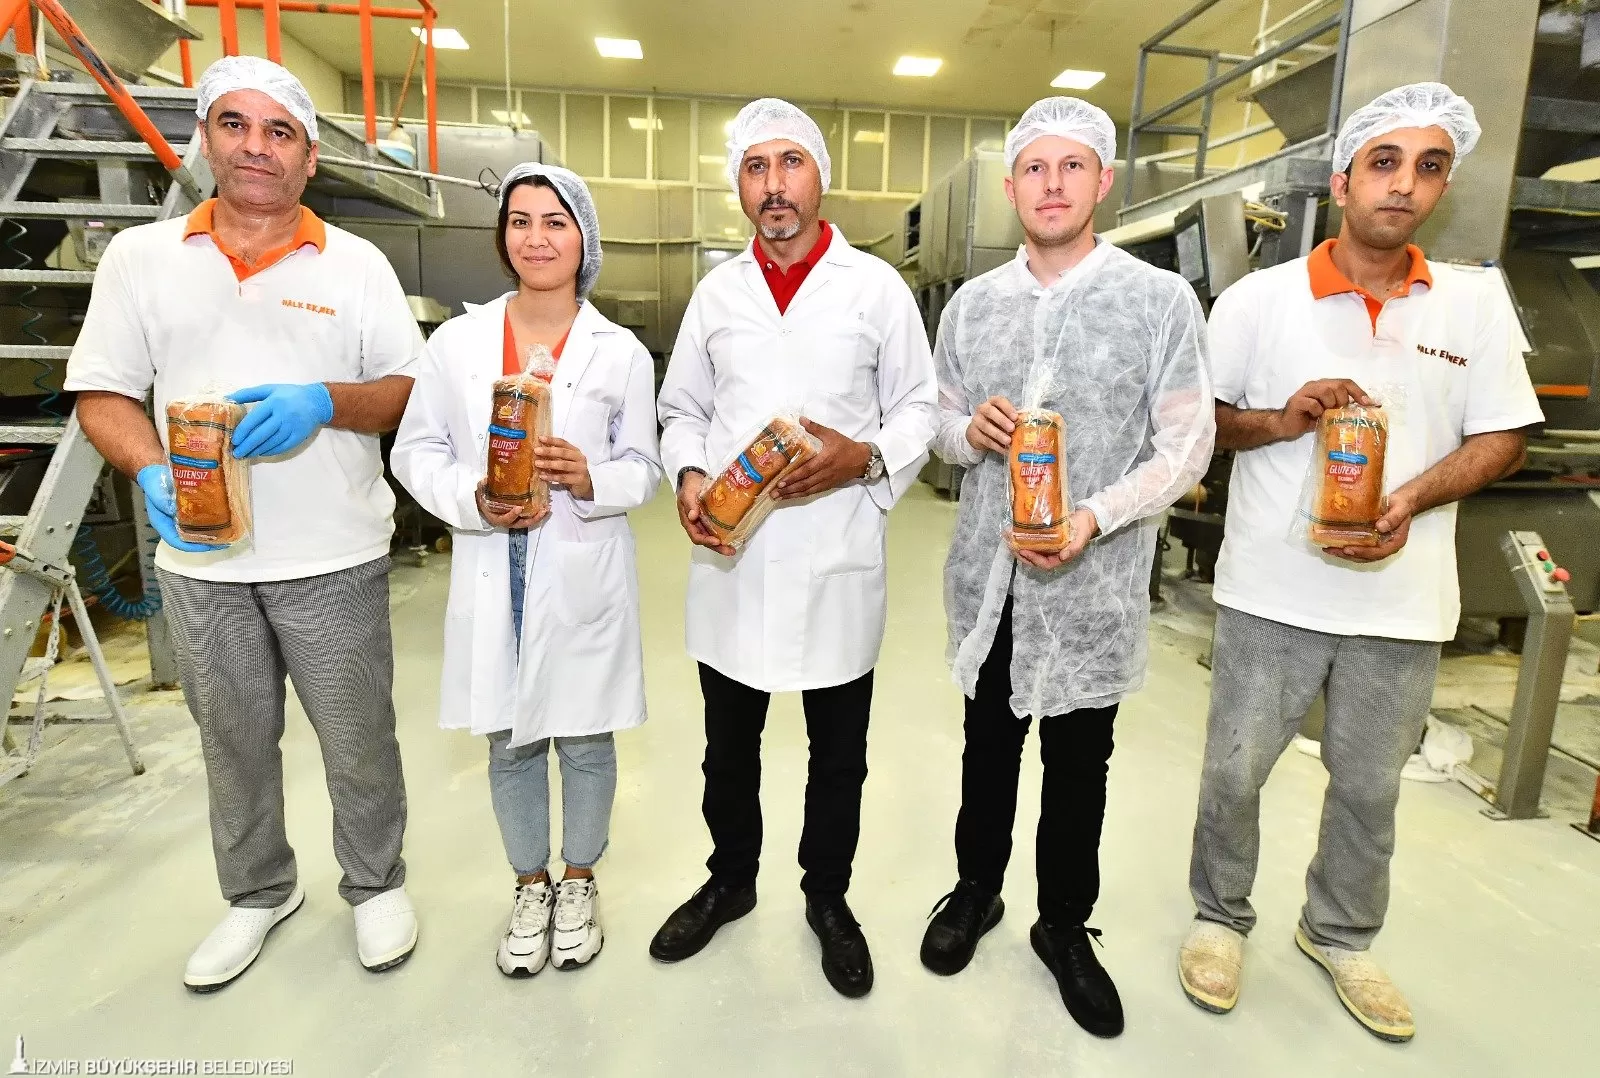 İzmir Büyükşehir Belediyesi'nin Halk Ekmek Fabrikası çölyak hastalarına özel ekmek üreterek önemli bir sosyal sorumluluk projesine imza attı. 